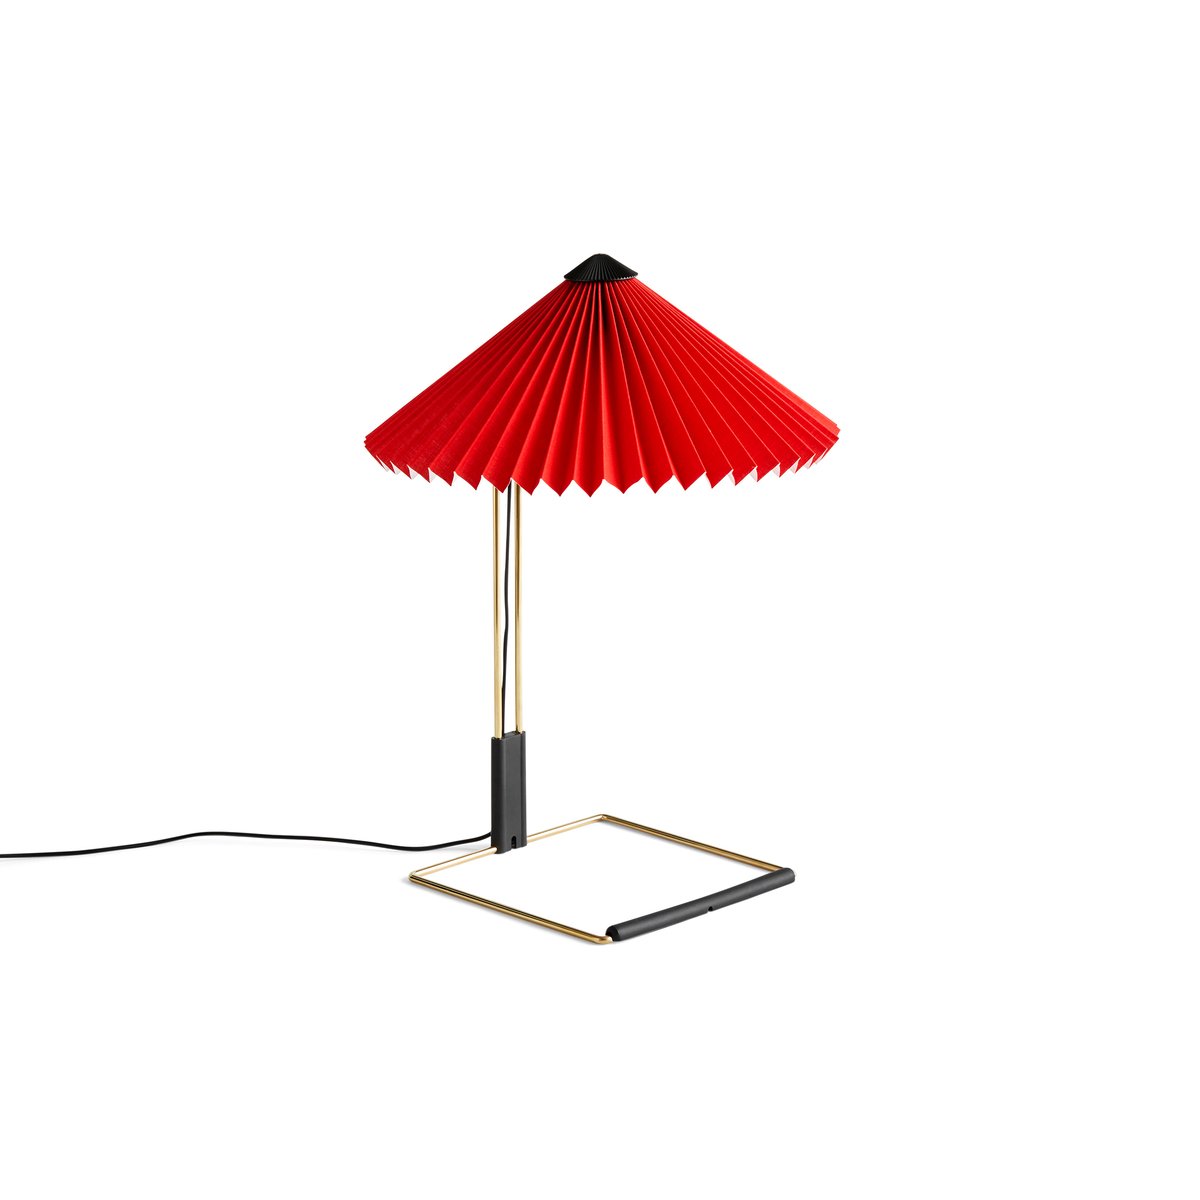 HAY Matin table -pöytävalaisin Ø 30 cm Bright red shade